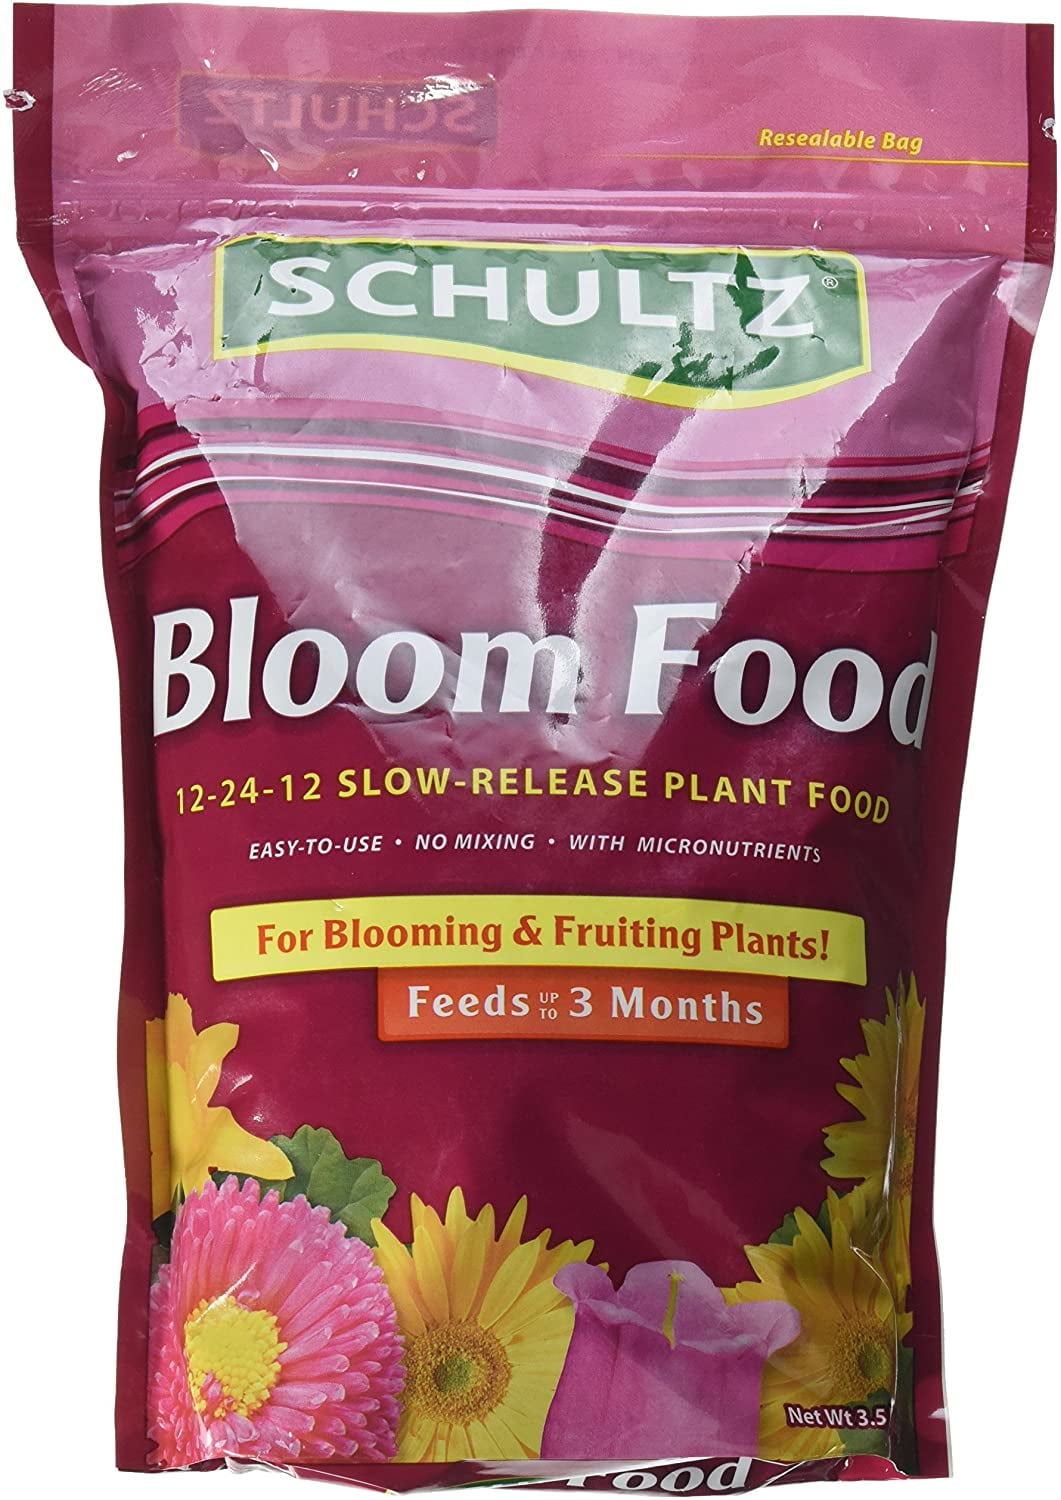 Image of Slow-release bloom fertilizer image